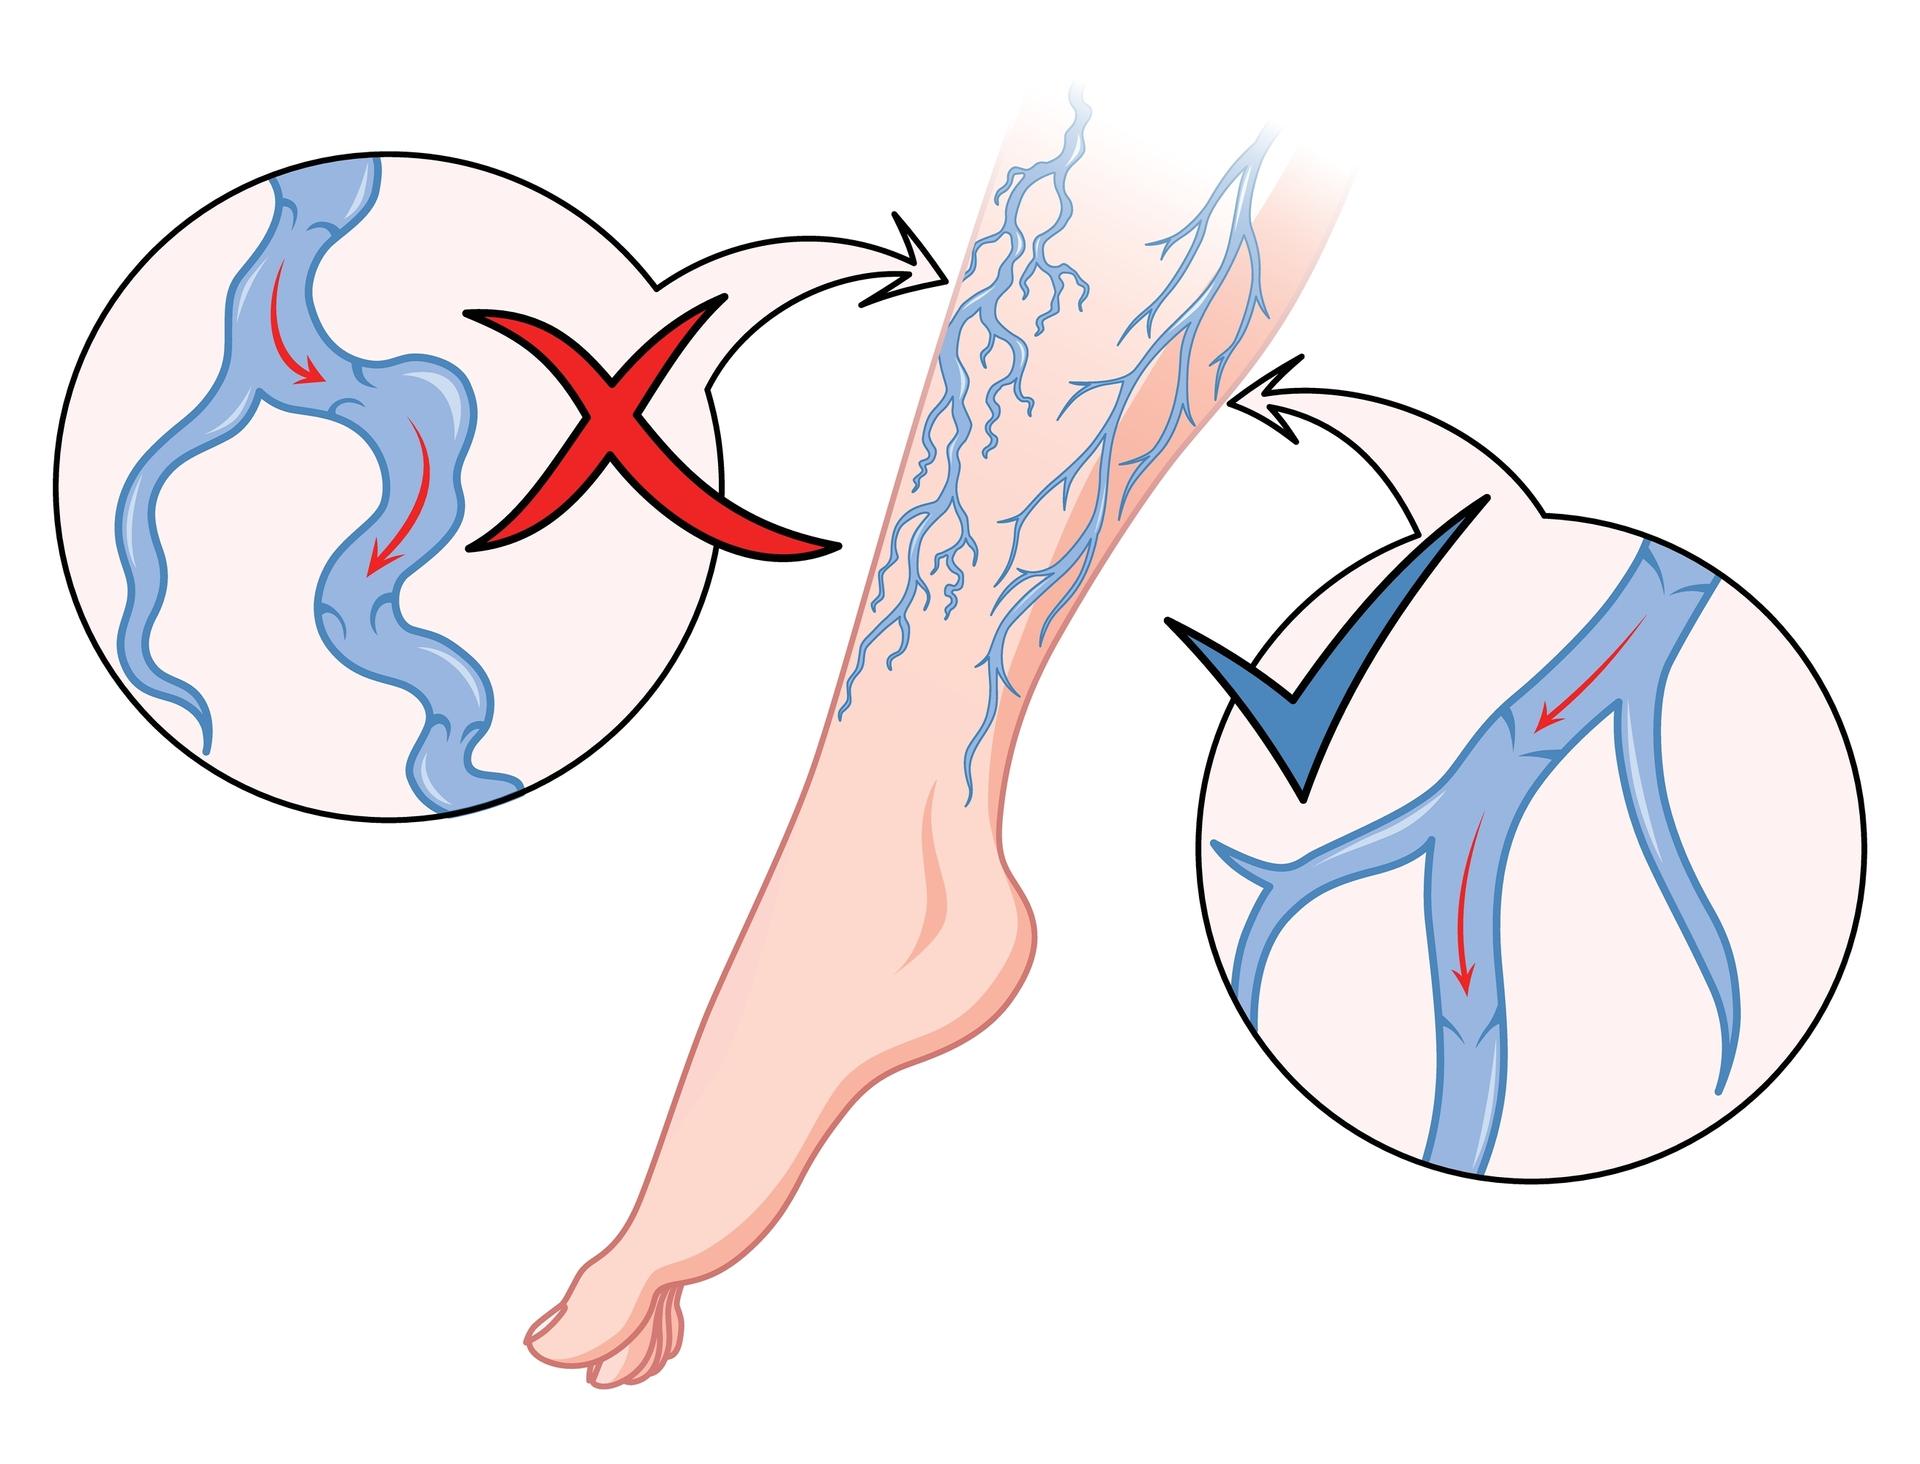 Die Illustration zeigt Krampfadern und eine Durchblutungsstörung im Bein.